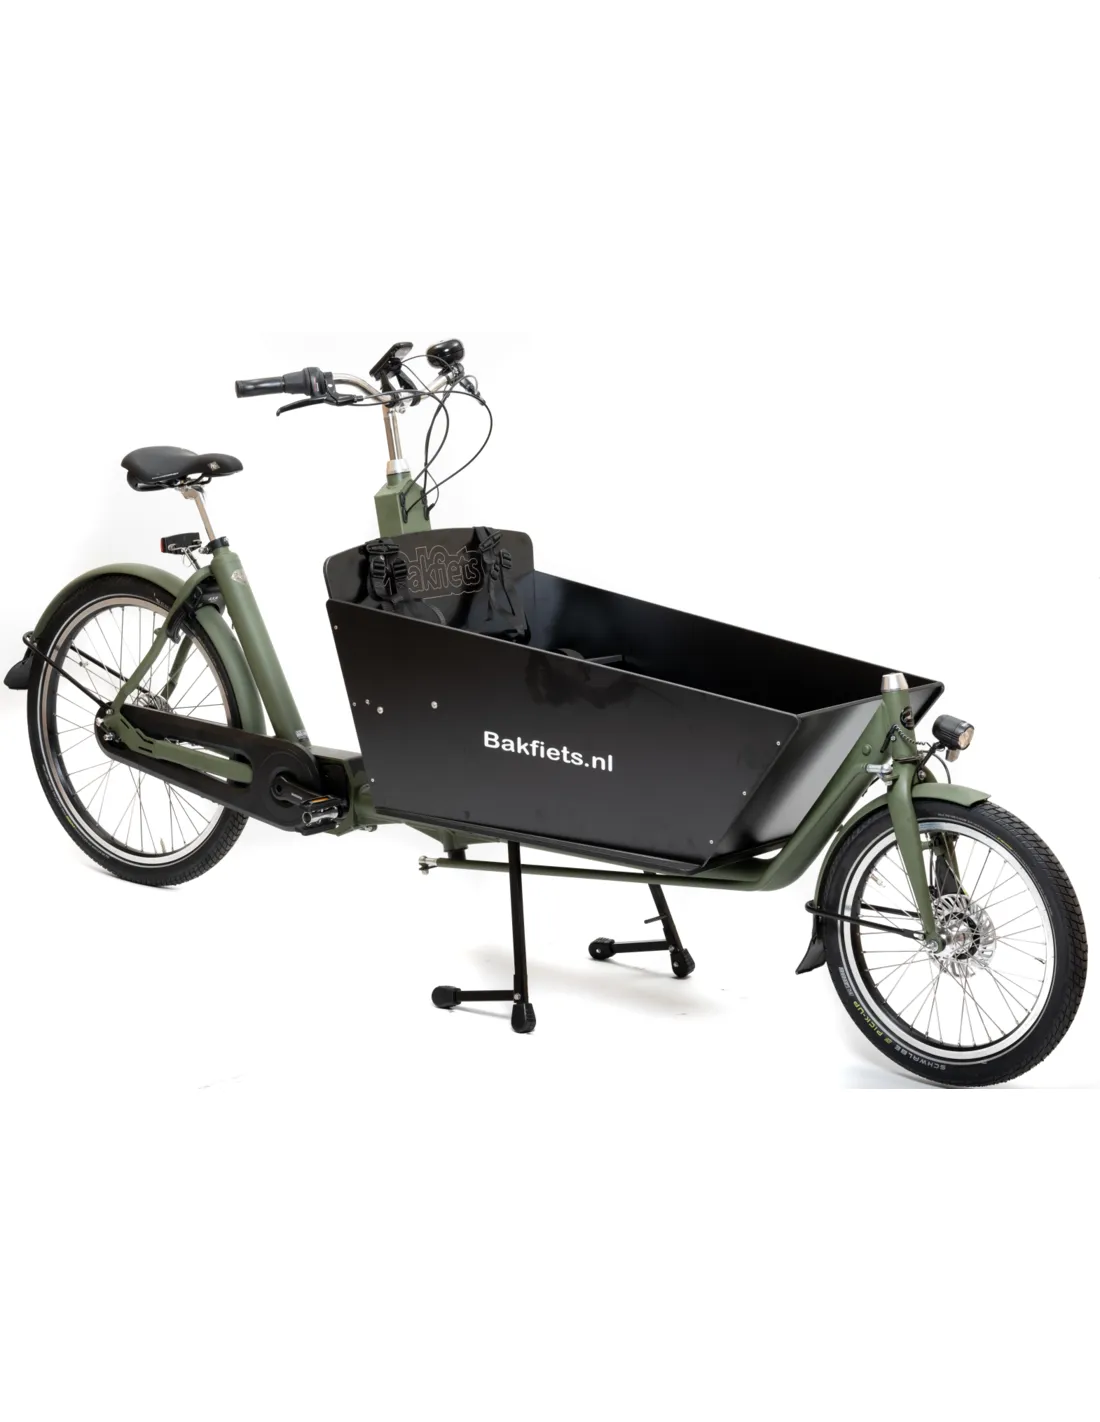 bakfietsnl-cargobike-cruiser-long-steps-400wh-nn7-rollerbrakes-mat-leger-groen-met-zwarte-bak